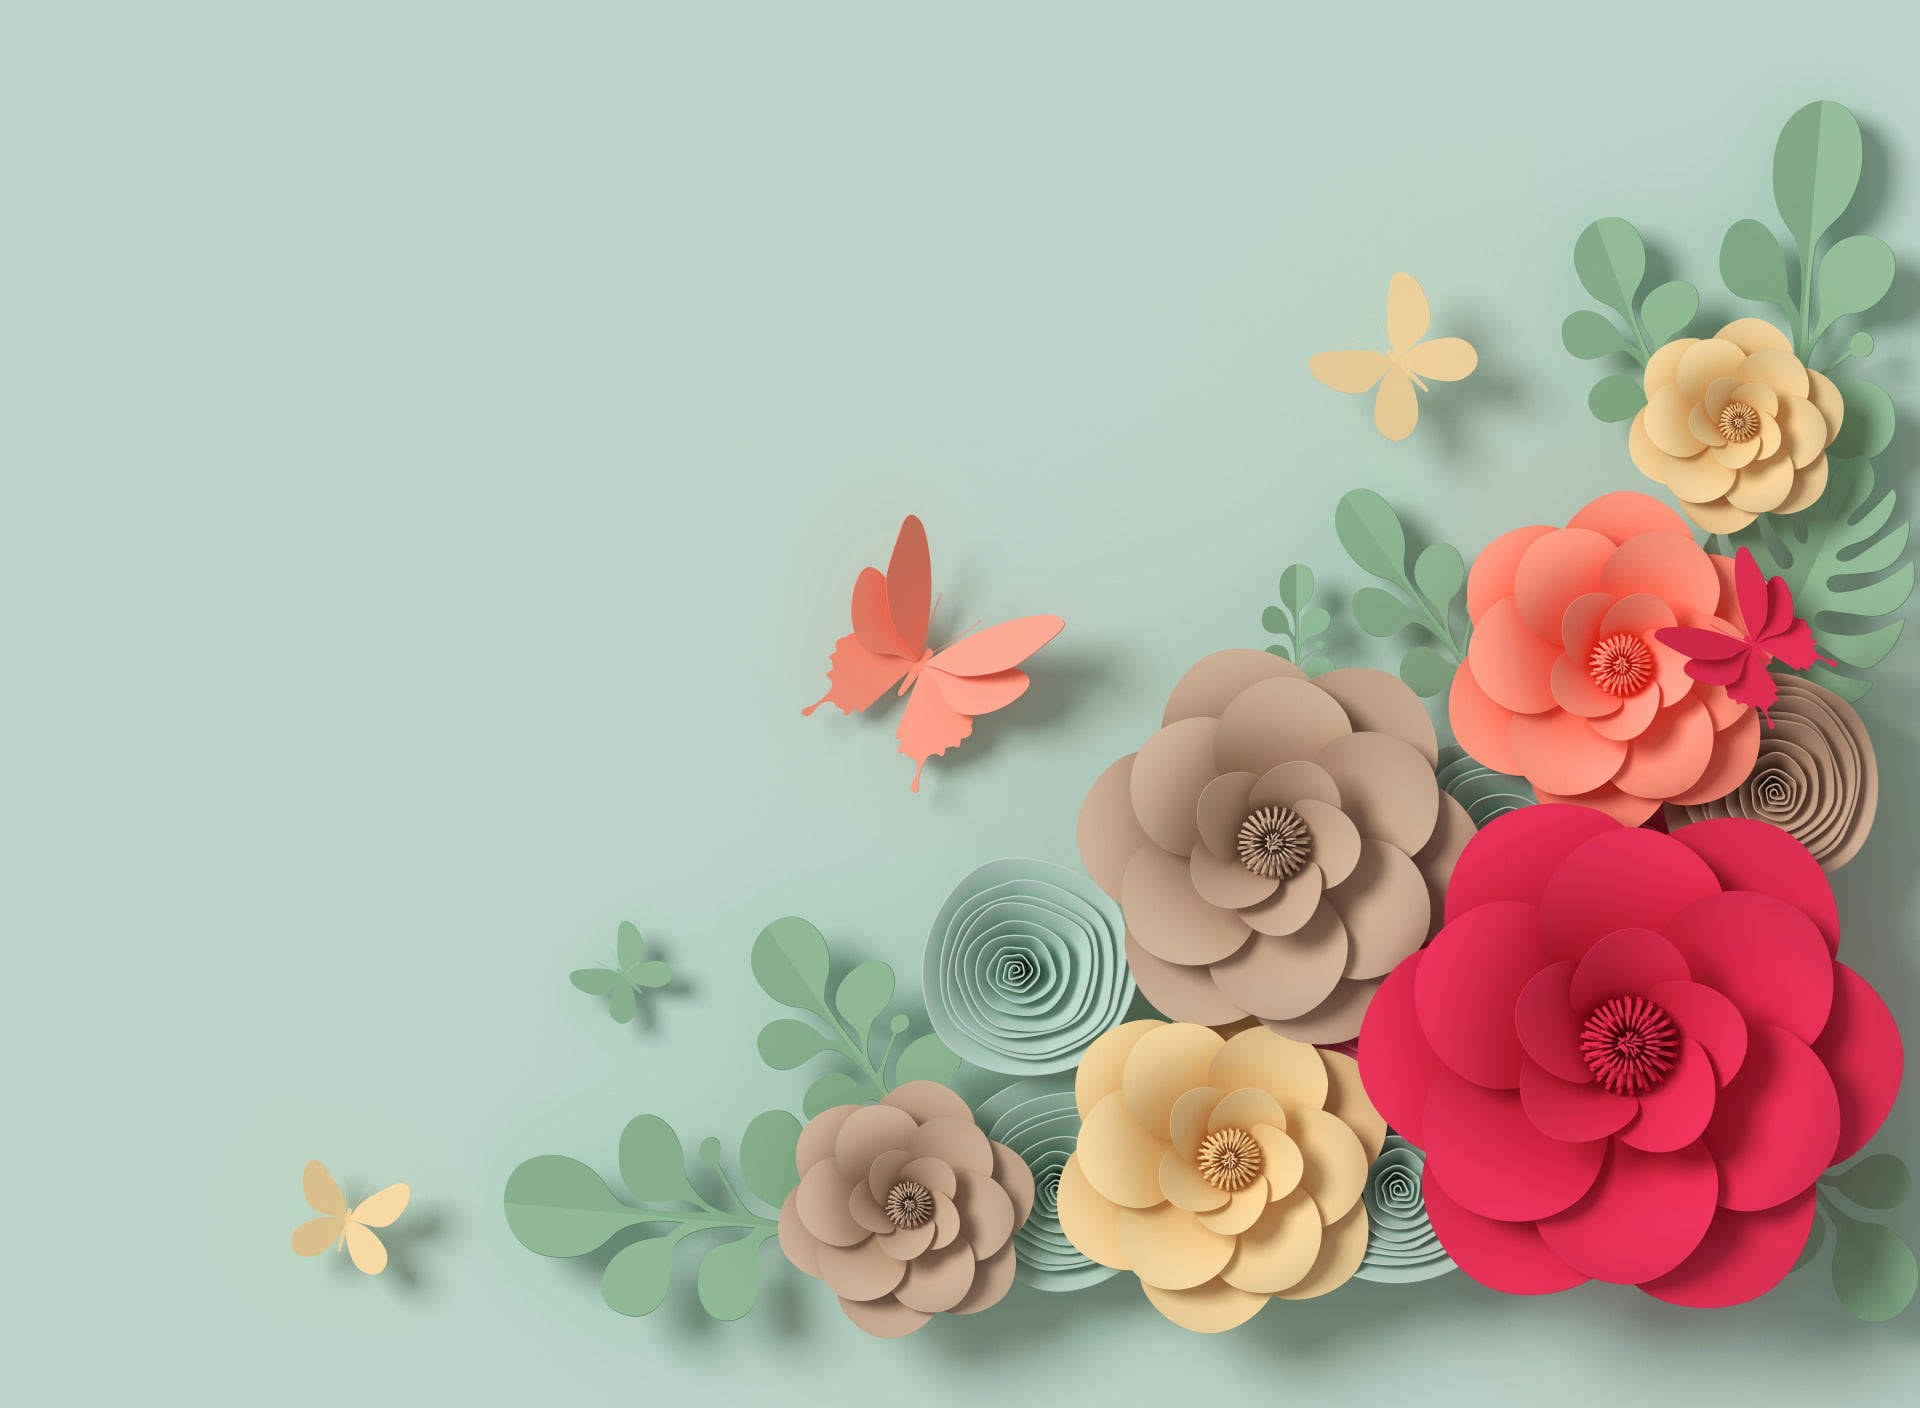 Pastellfarbenedesktop-hintergrundbilder Mit Papierblumen Und Schmetterlingen. Wallpaper